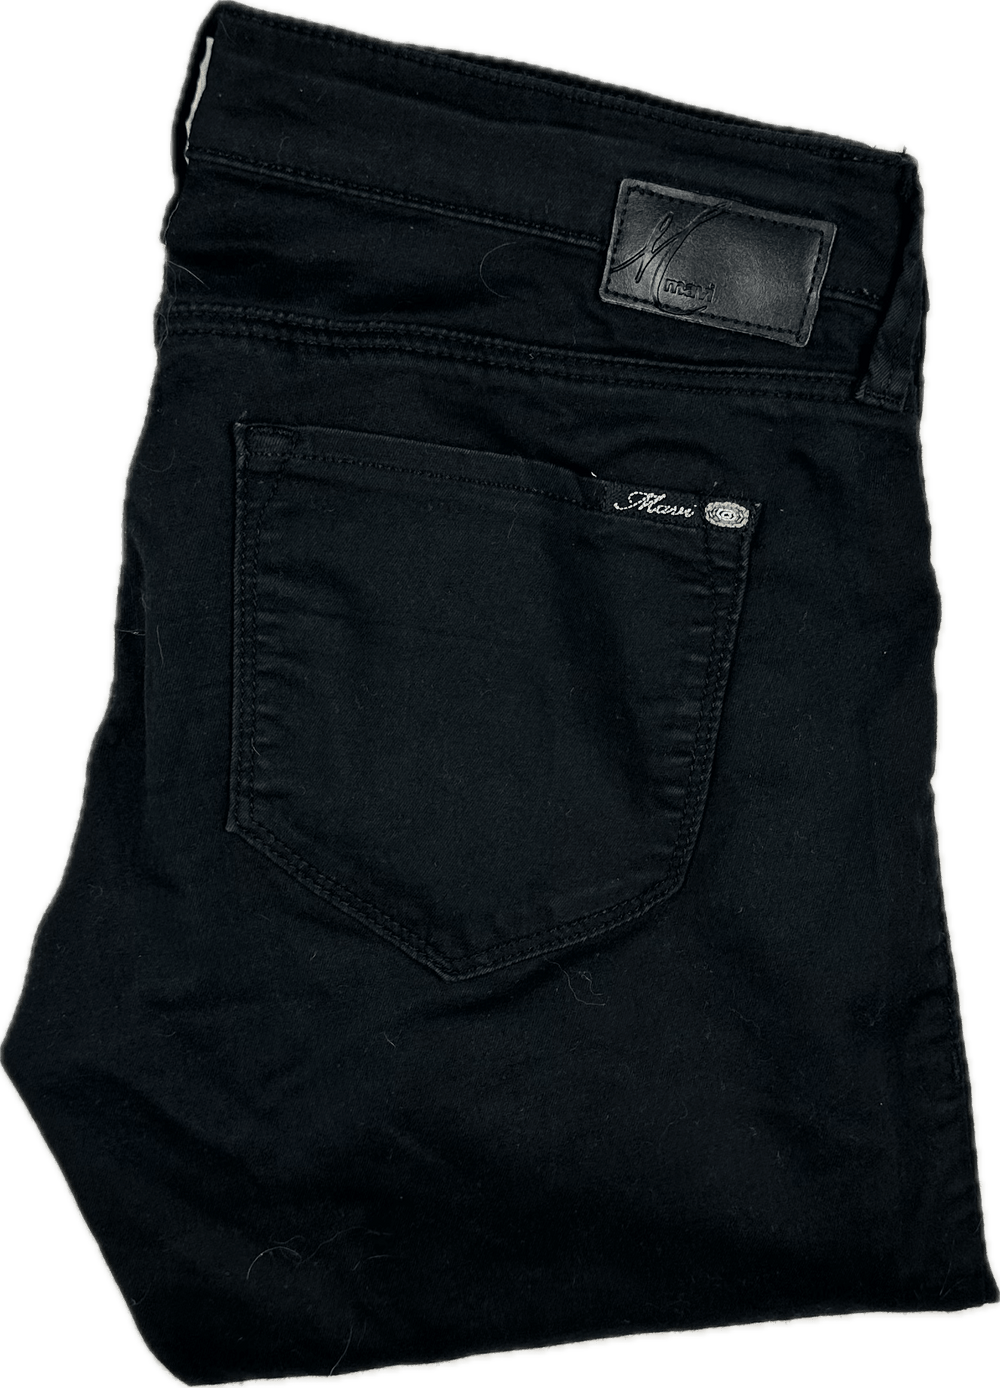 Mavi Black Maternity Stretch Skinny Jeans -Size 30 - Jean Pool